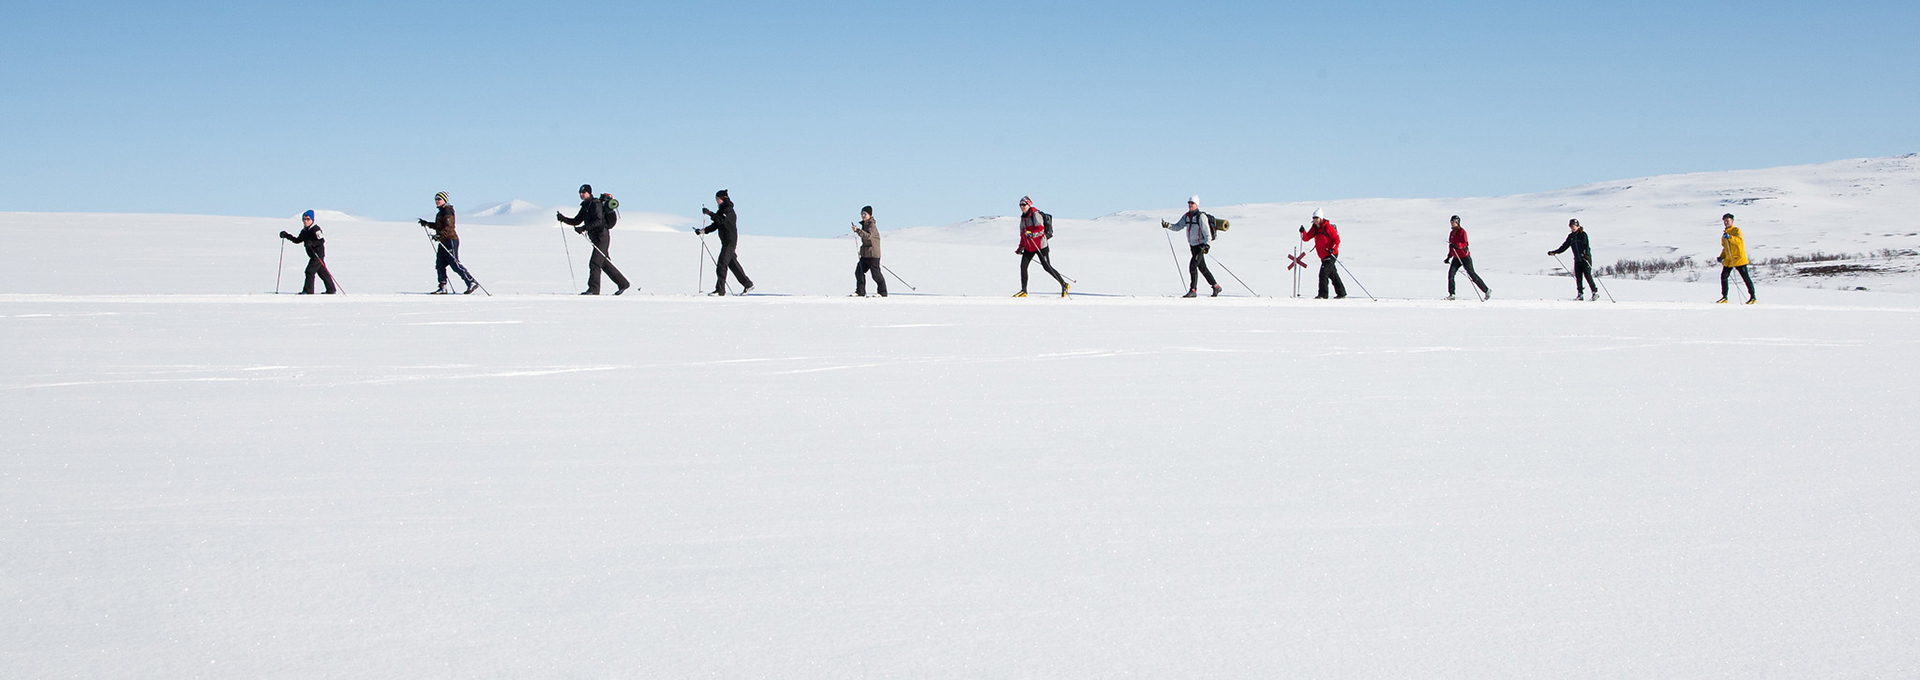 Grupp som åker längdskidor på fjället